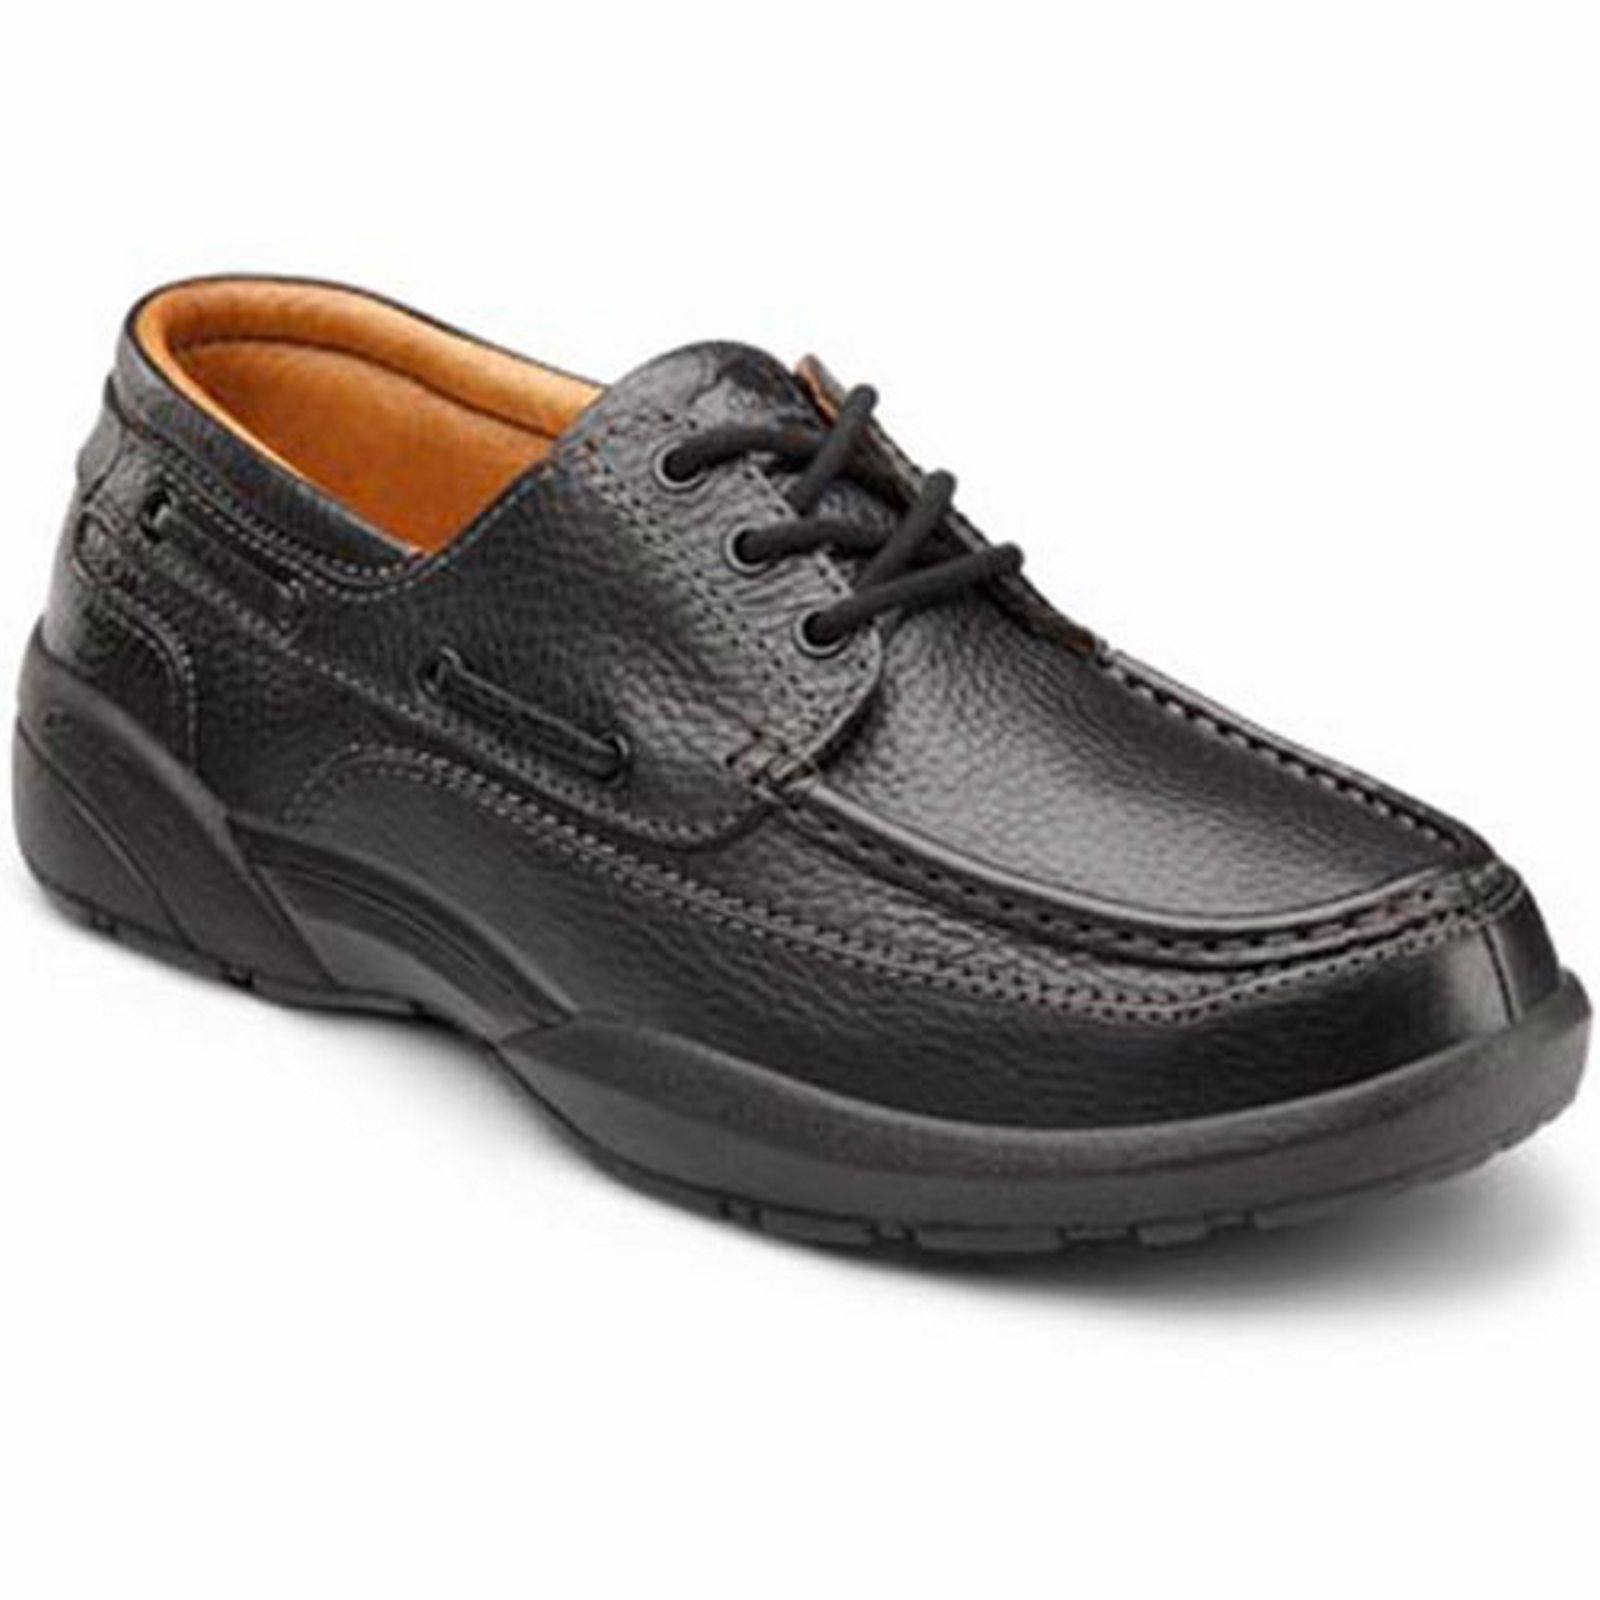 Dr. Comfort Patrick Men's Boat Shoe: 6.5 X-Wide (3E/4E) Chestnut/Black Lace - image 2 of 5